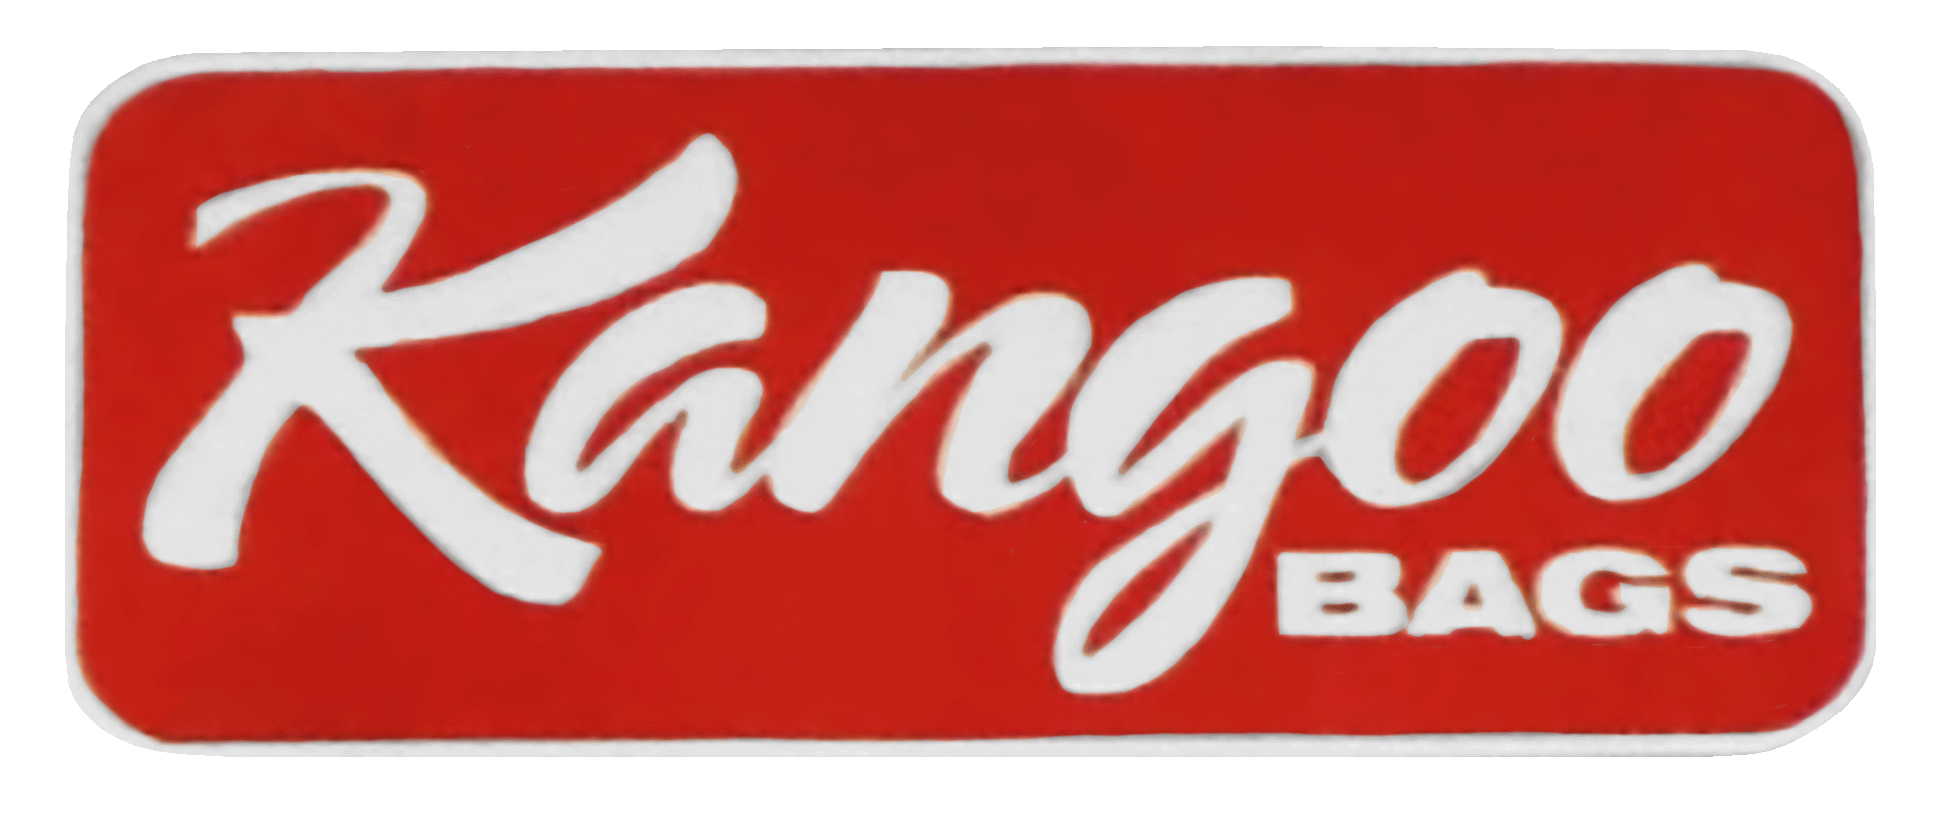 Kangoo Bags